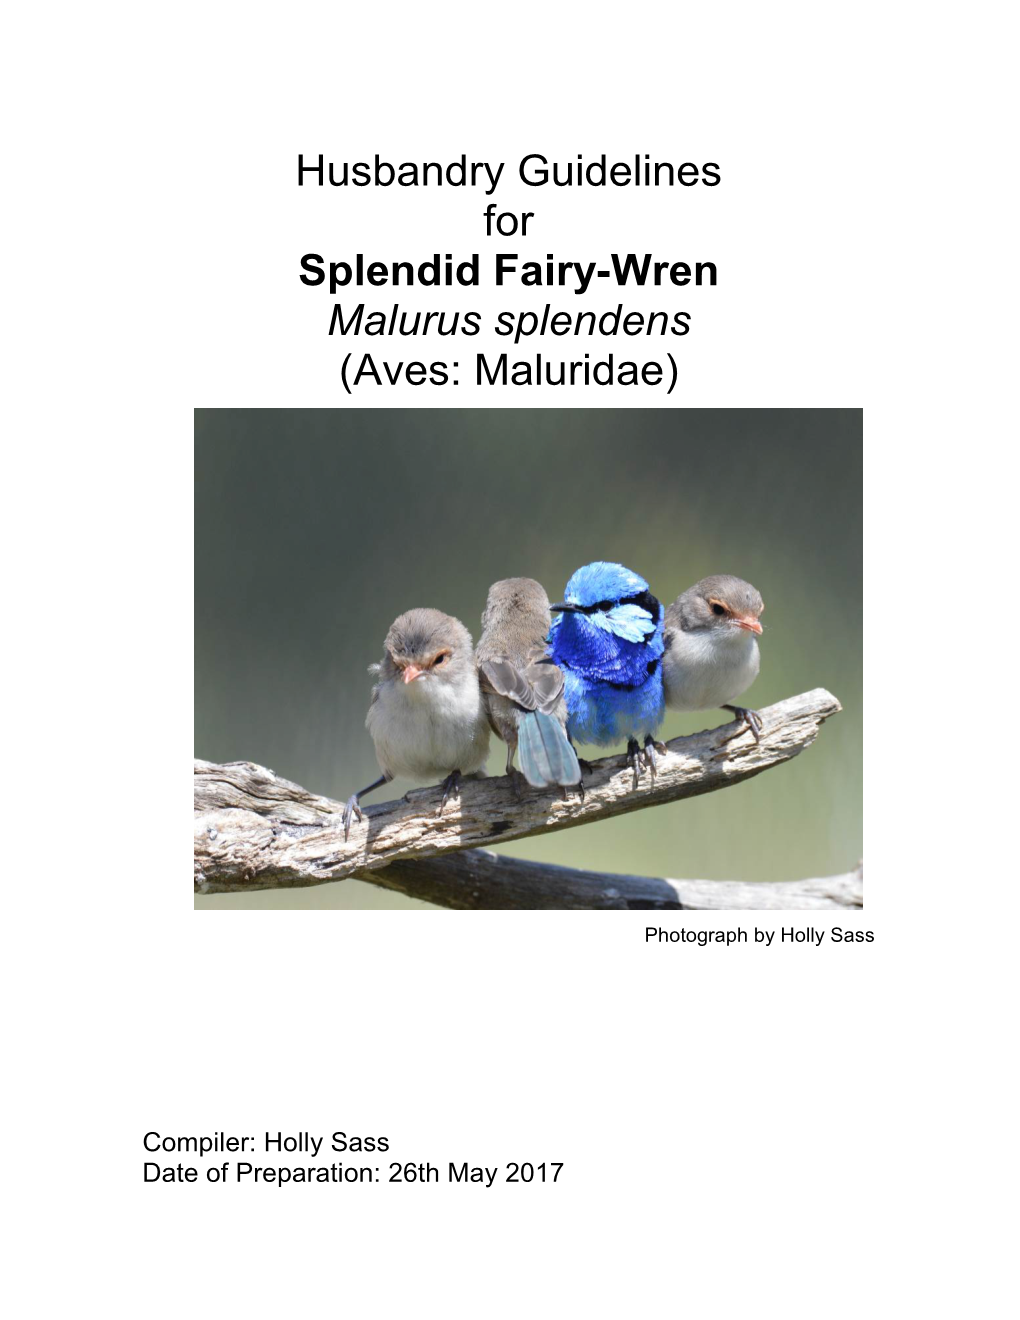 Husbandry Guidelines for Splendid Fairy-Wren Malurus Splendens (Aves: Maluridae)